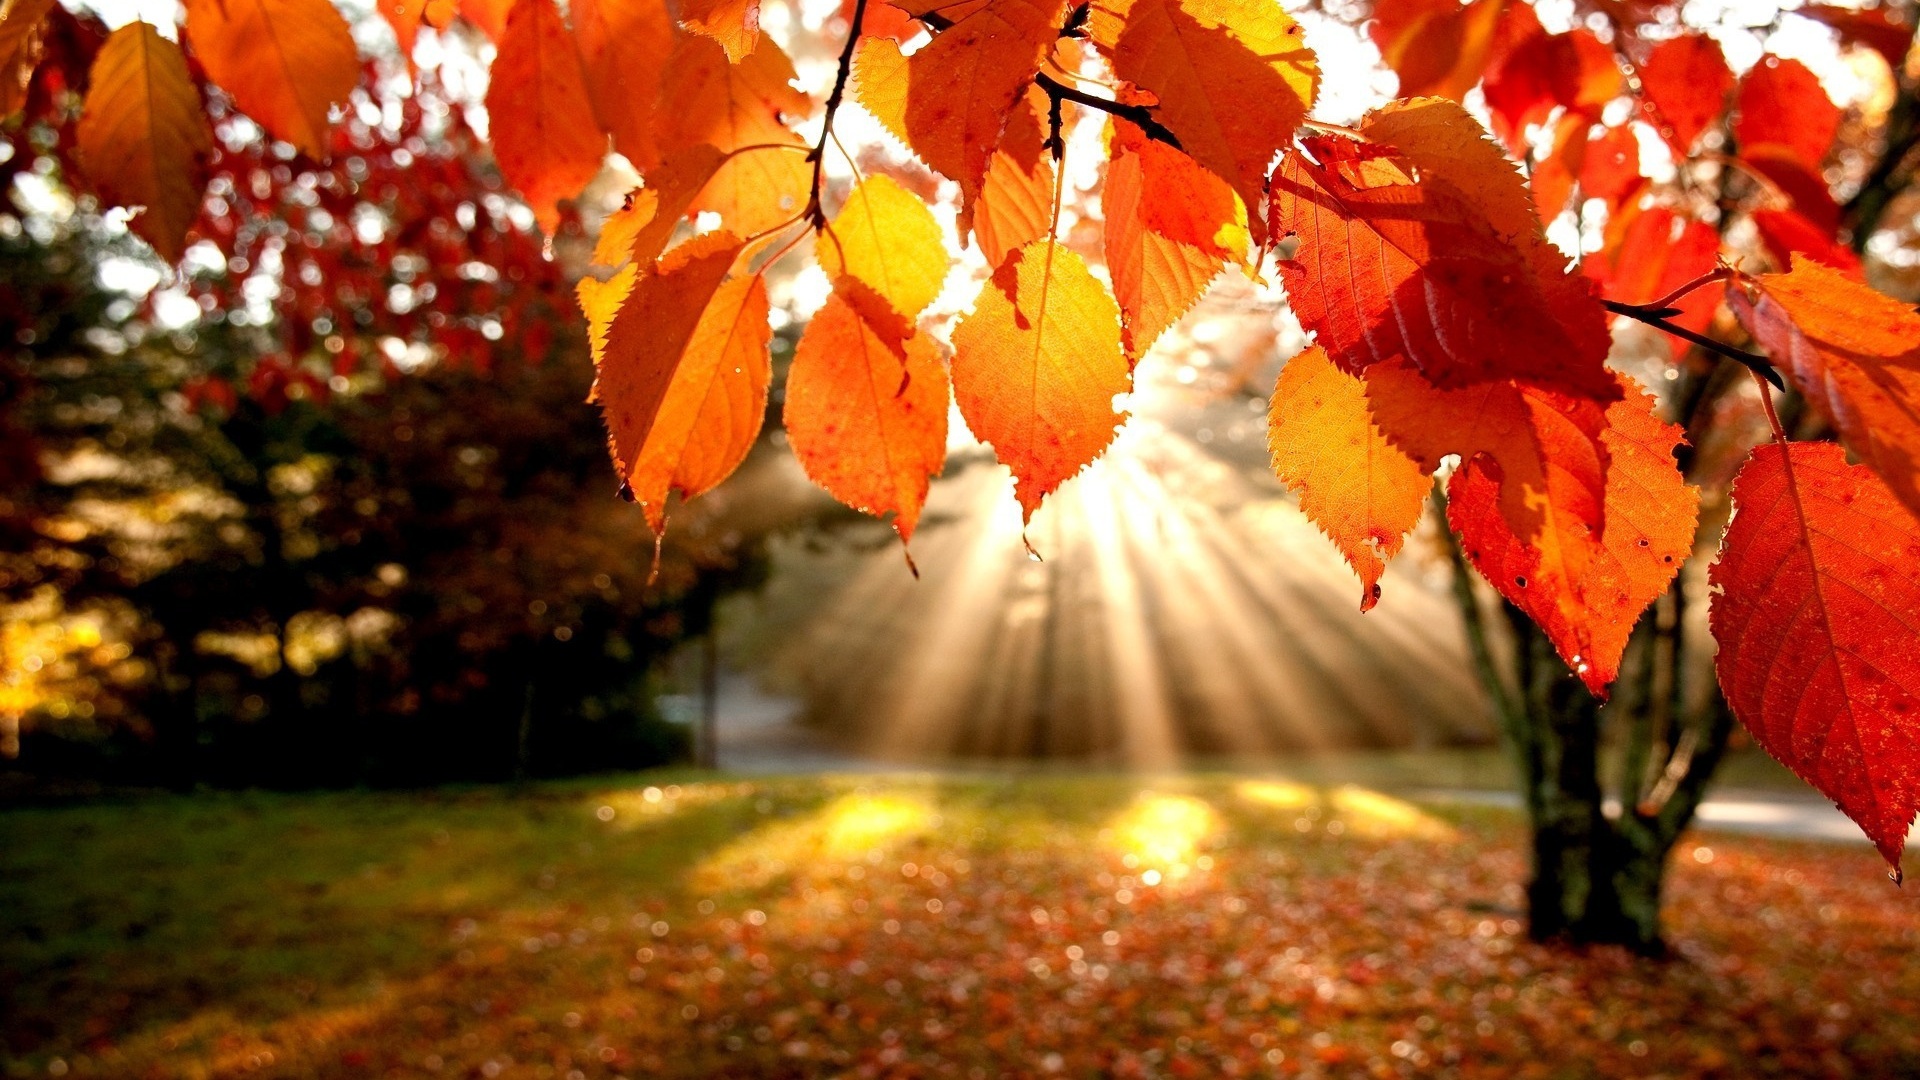 nice autumn leaves image